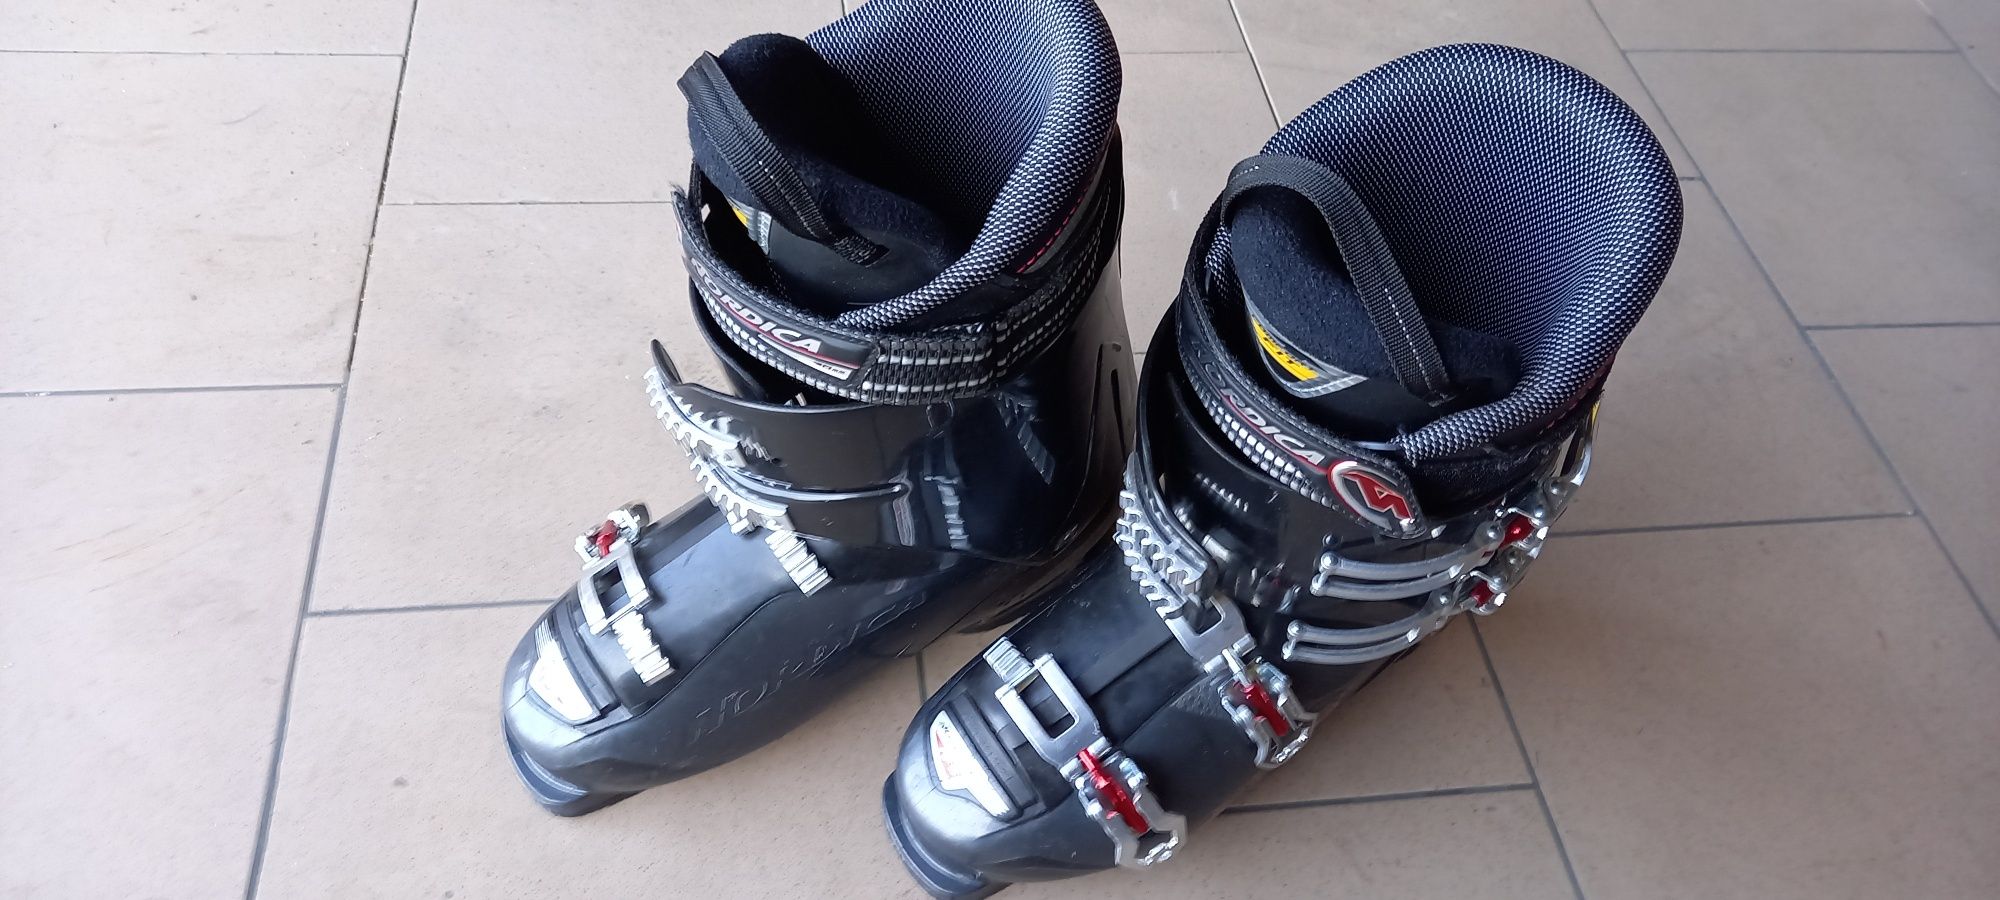 Używane buty narciarskie